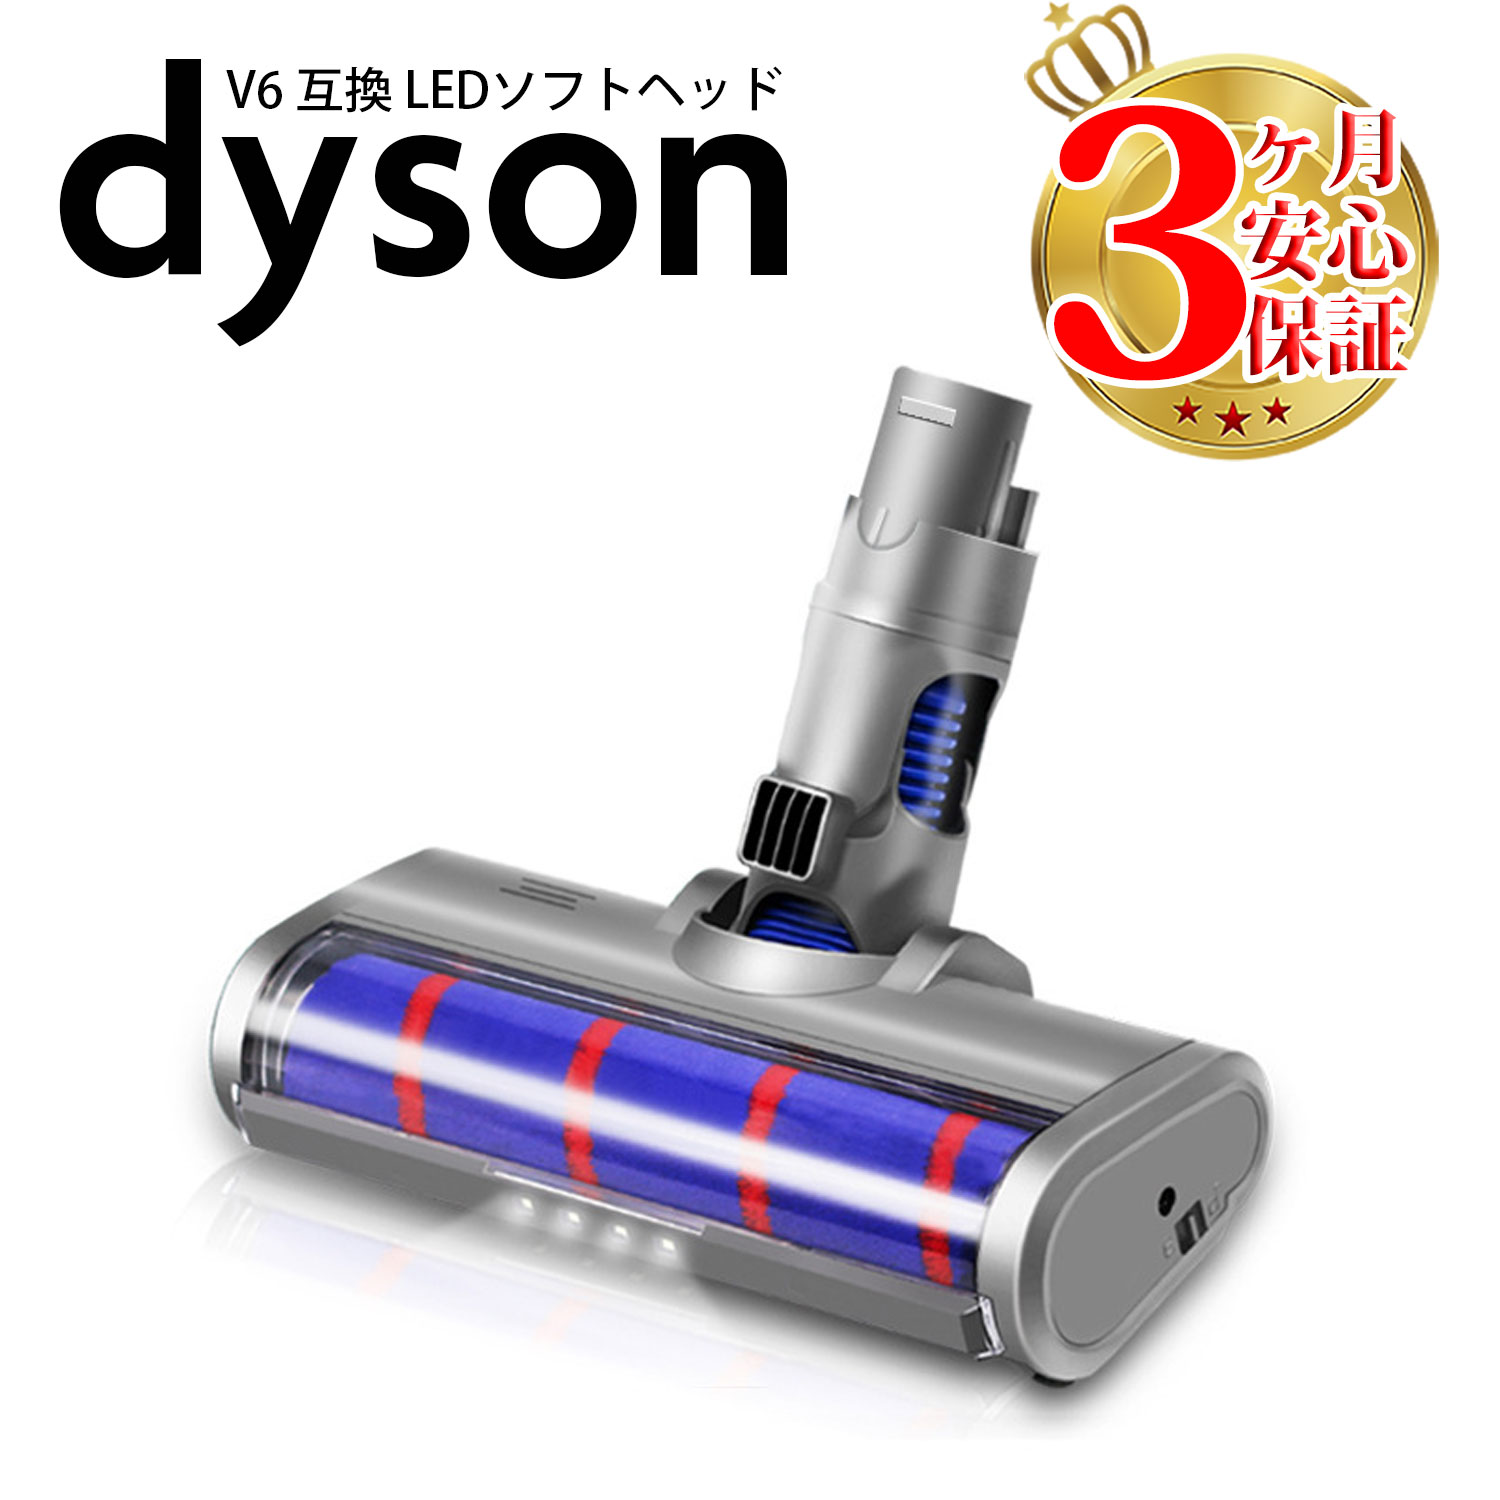 ダイソン 掃除機 LED ソフトローラークリーナーヘッド v6 dc61 dc62 dc74 互換 dyson 照明 ライト | コードレス 部品…